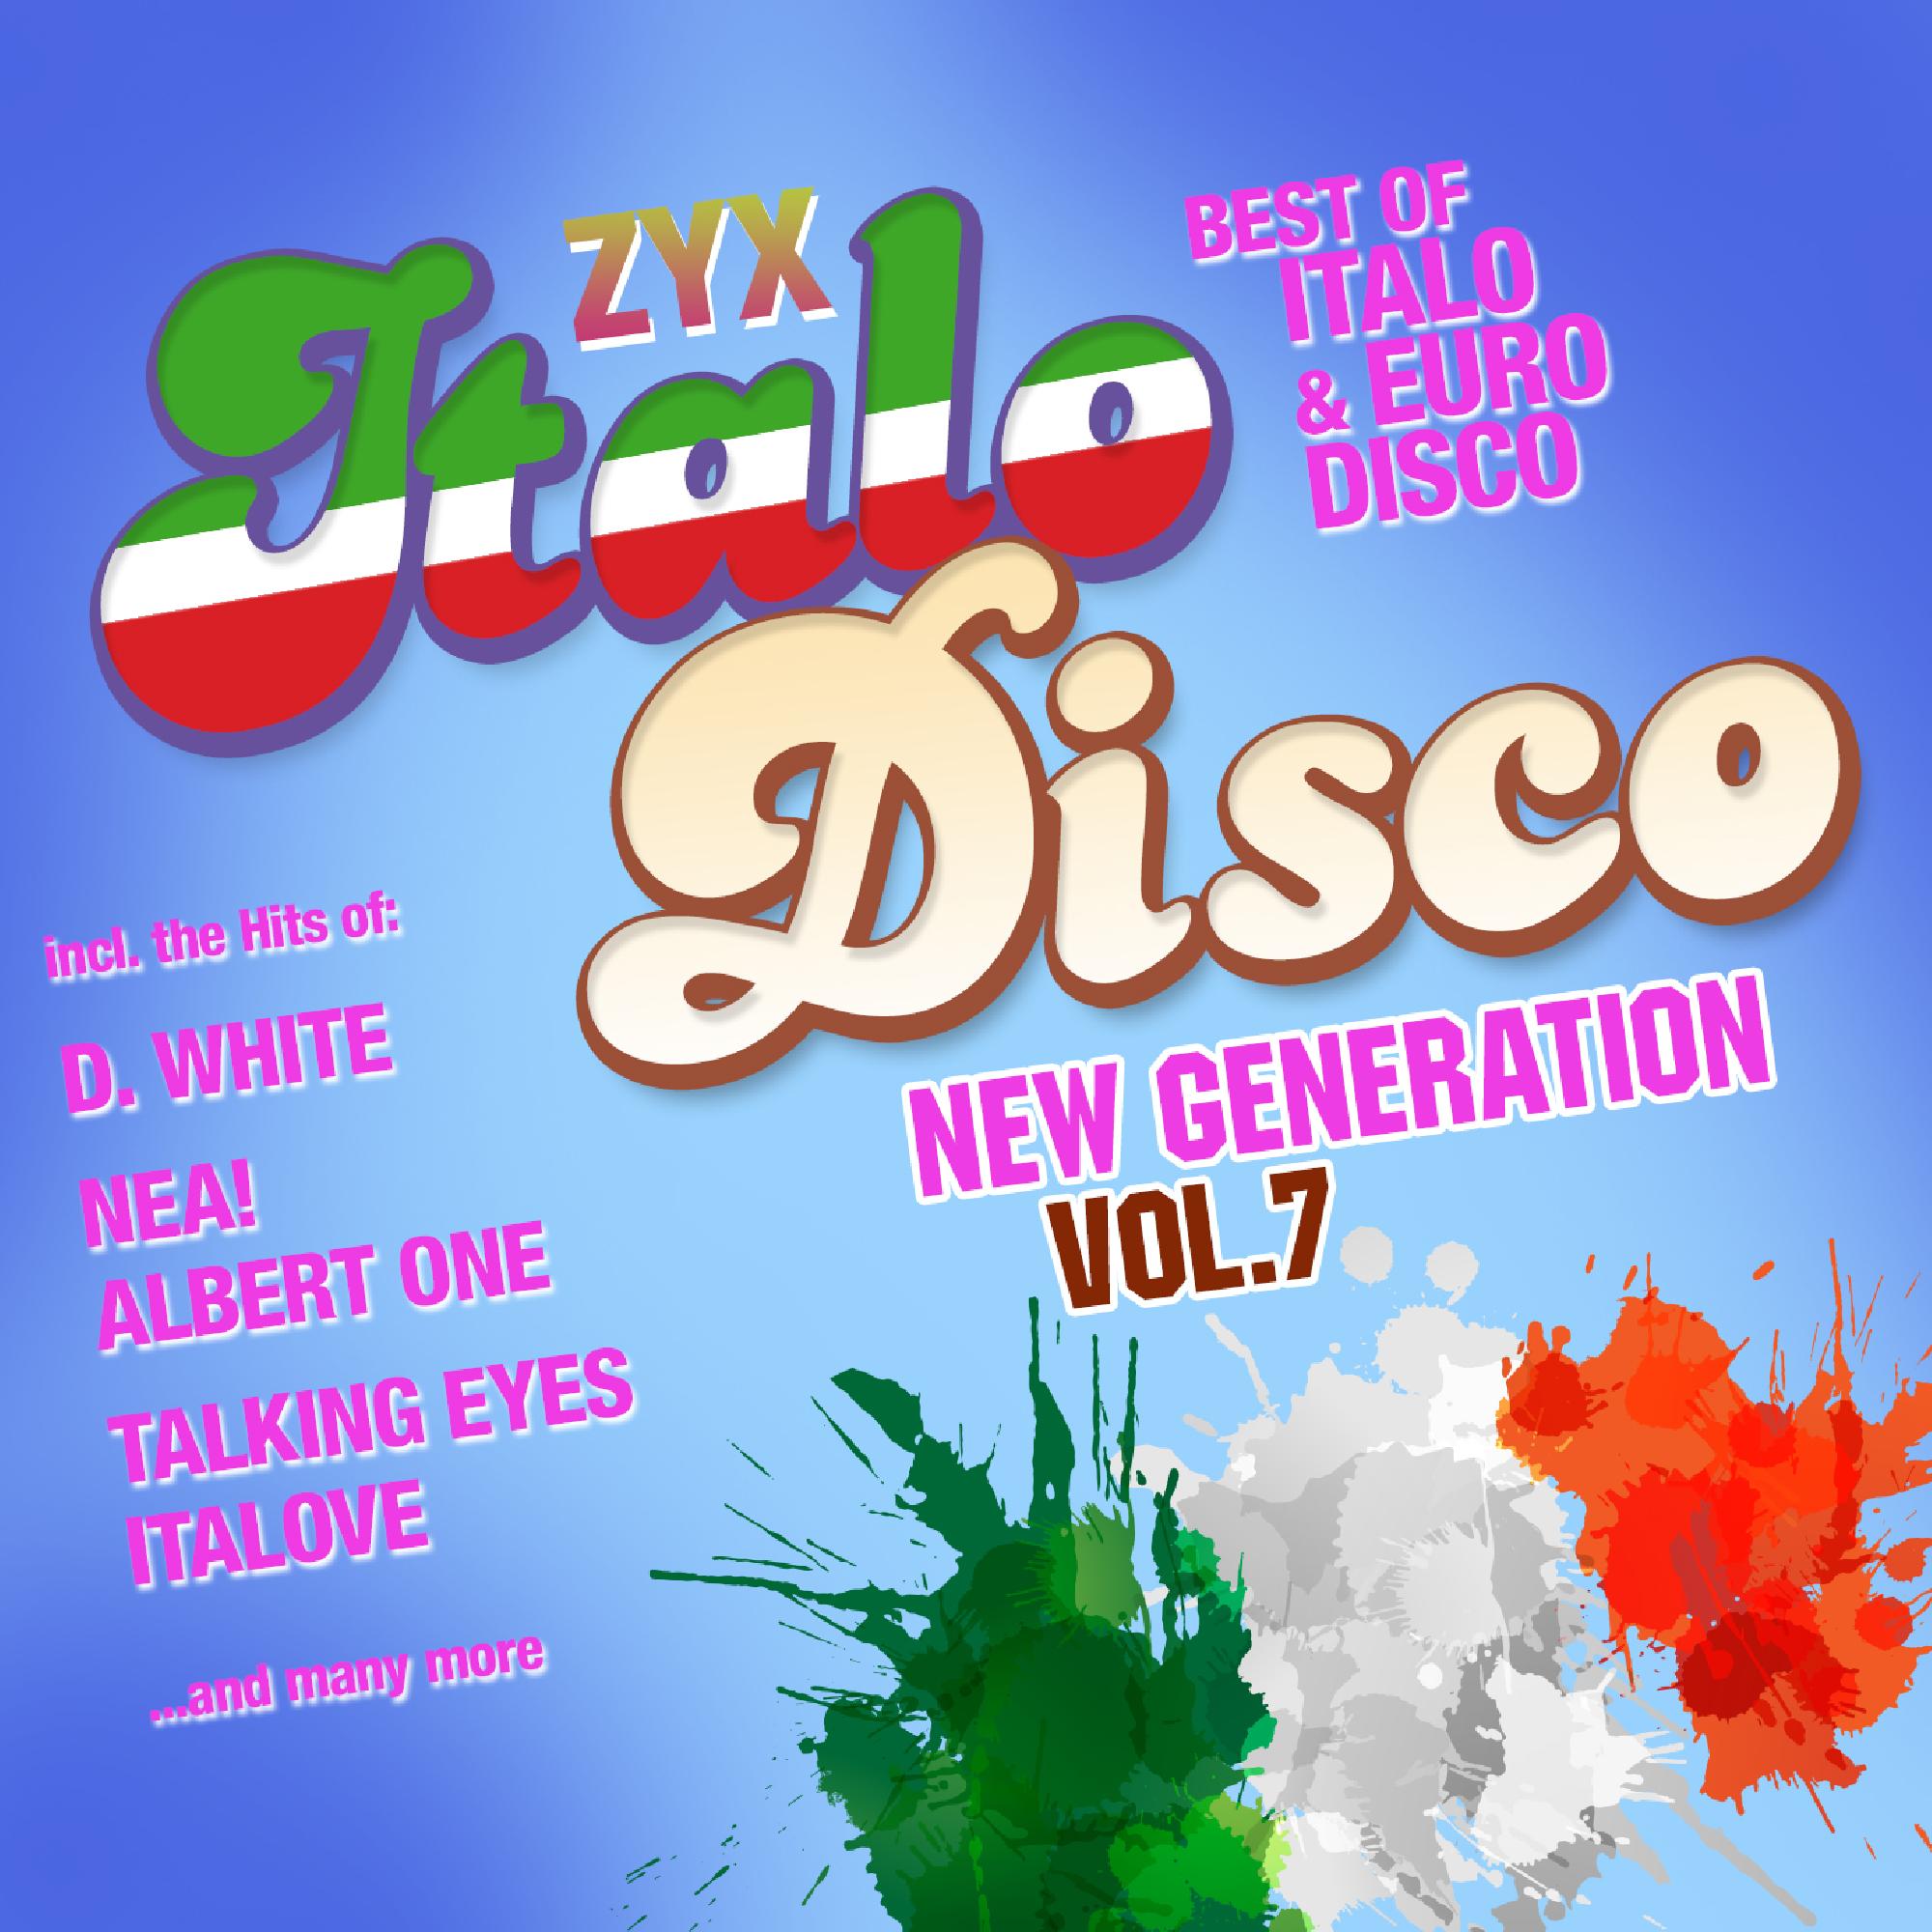 Italo disco new generation vol 24. ZYX Italo Disco New Generation Vol 7 CD 1. ZYX Italo Disco New Generation Vol 7 CD 2. ZYX Italo Disco New. Va - ZYX Italo Disco New Generation 20.